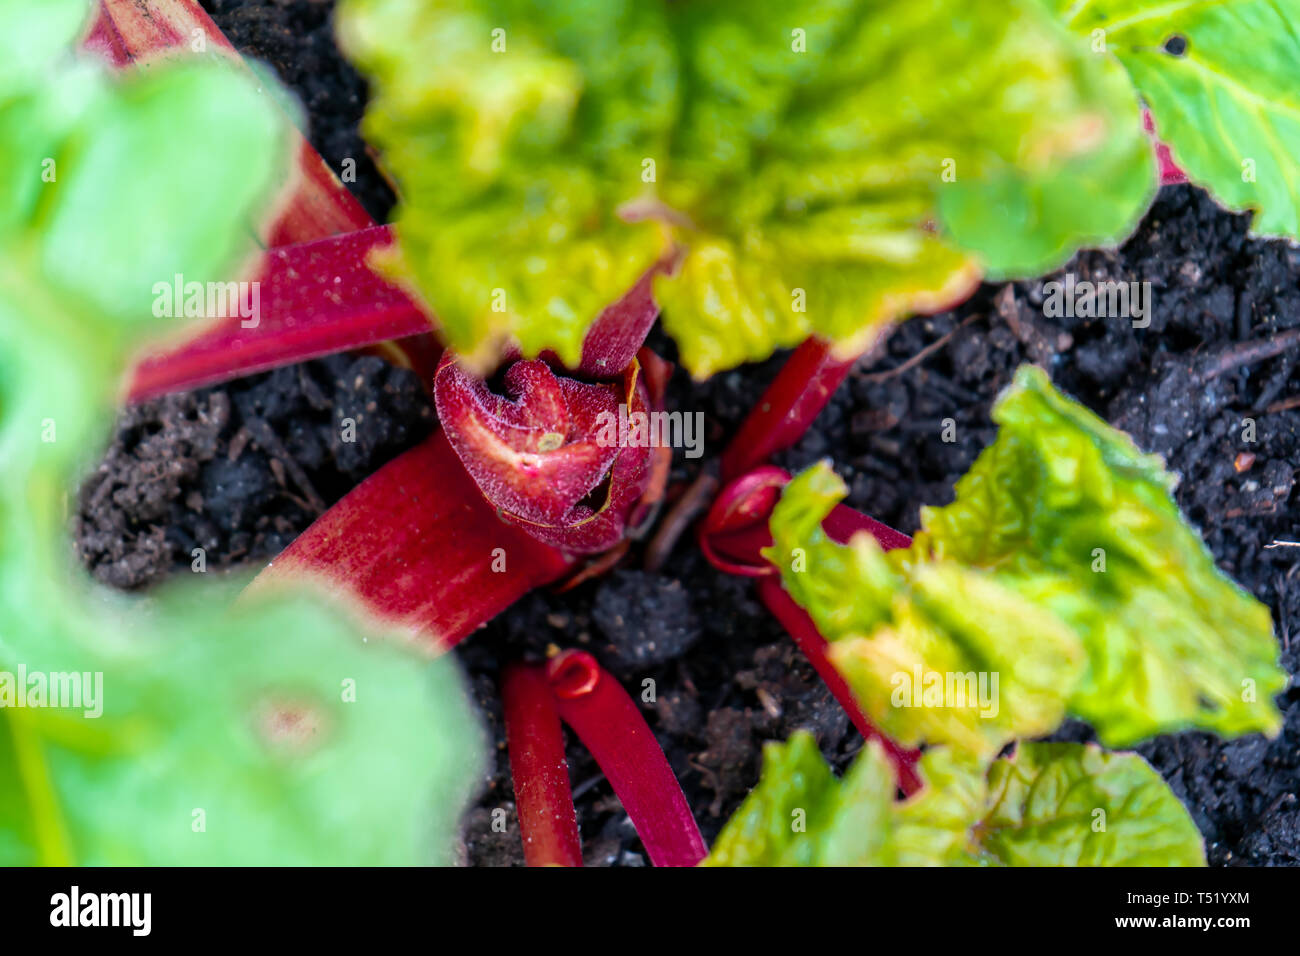 Ansicht von oben, in der Nähe von roten Rhabarber Krone wachsenden Stängel im frühen Frühling, in einem Gemüsegarten. Beispiel der beständigen Essbare Pflanze mit Oxalsäure aci Stockfoto